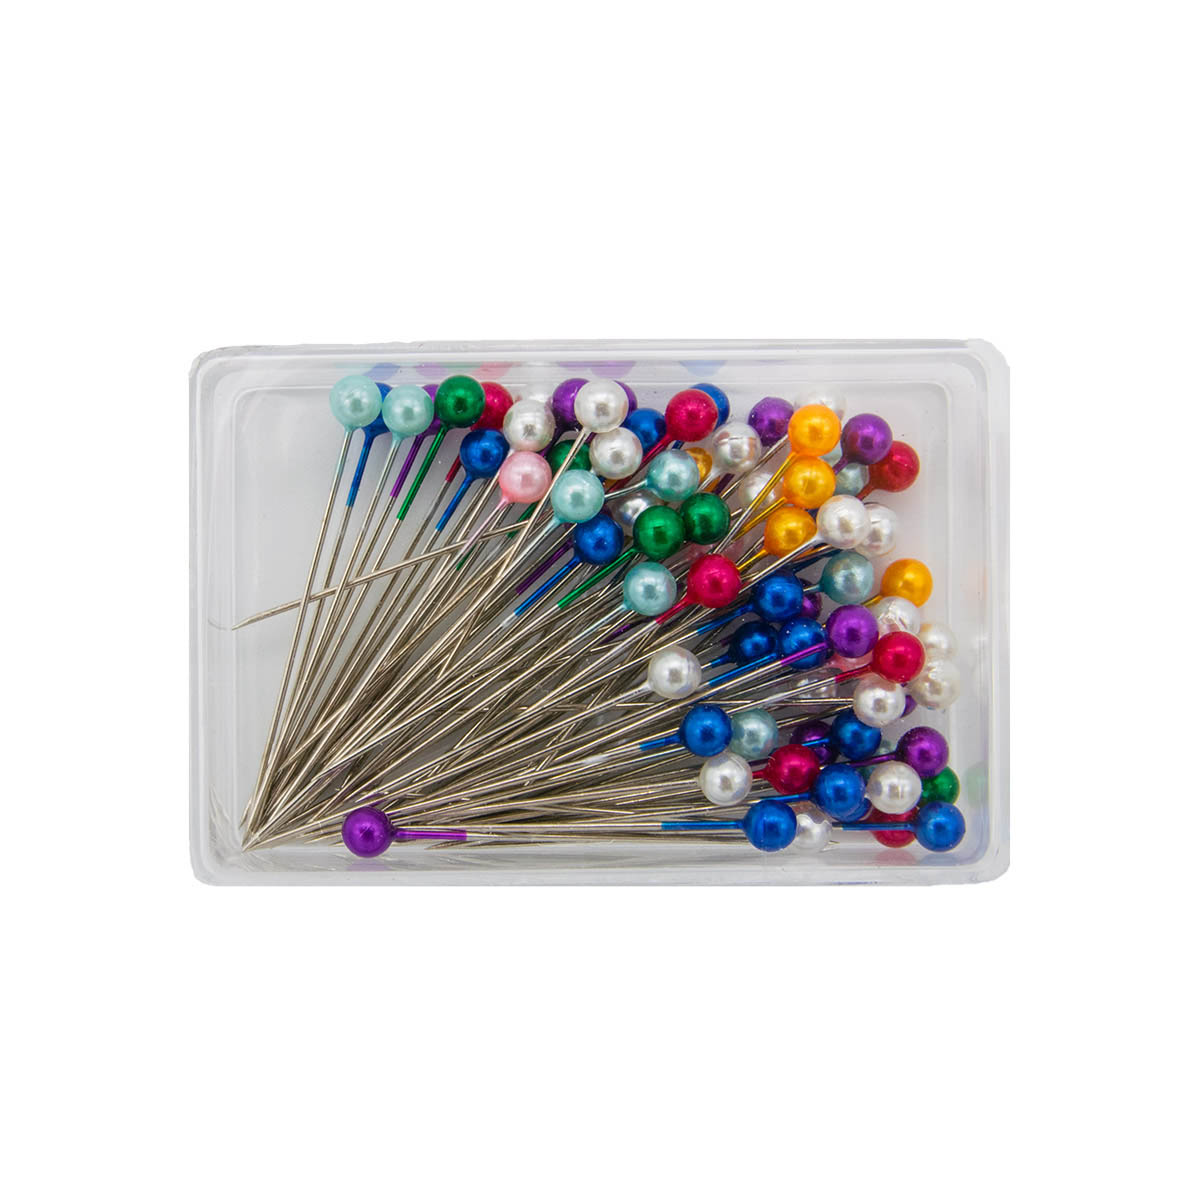 Булавки Айрис портновские металлические для шитья и рукоделия с разноцветными головками в футляре 80 шт - фото 3